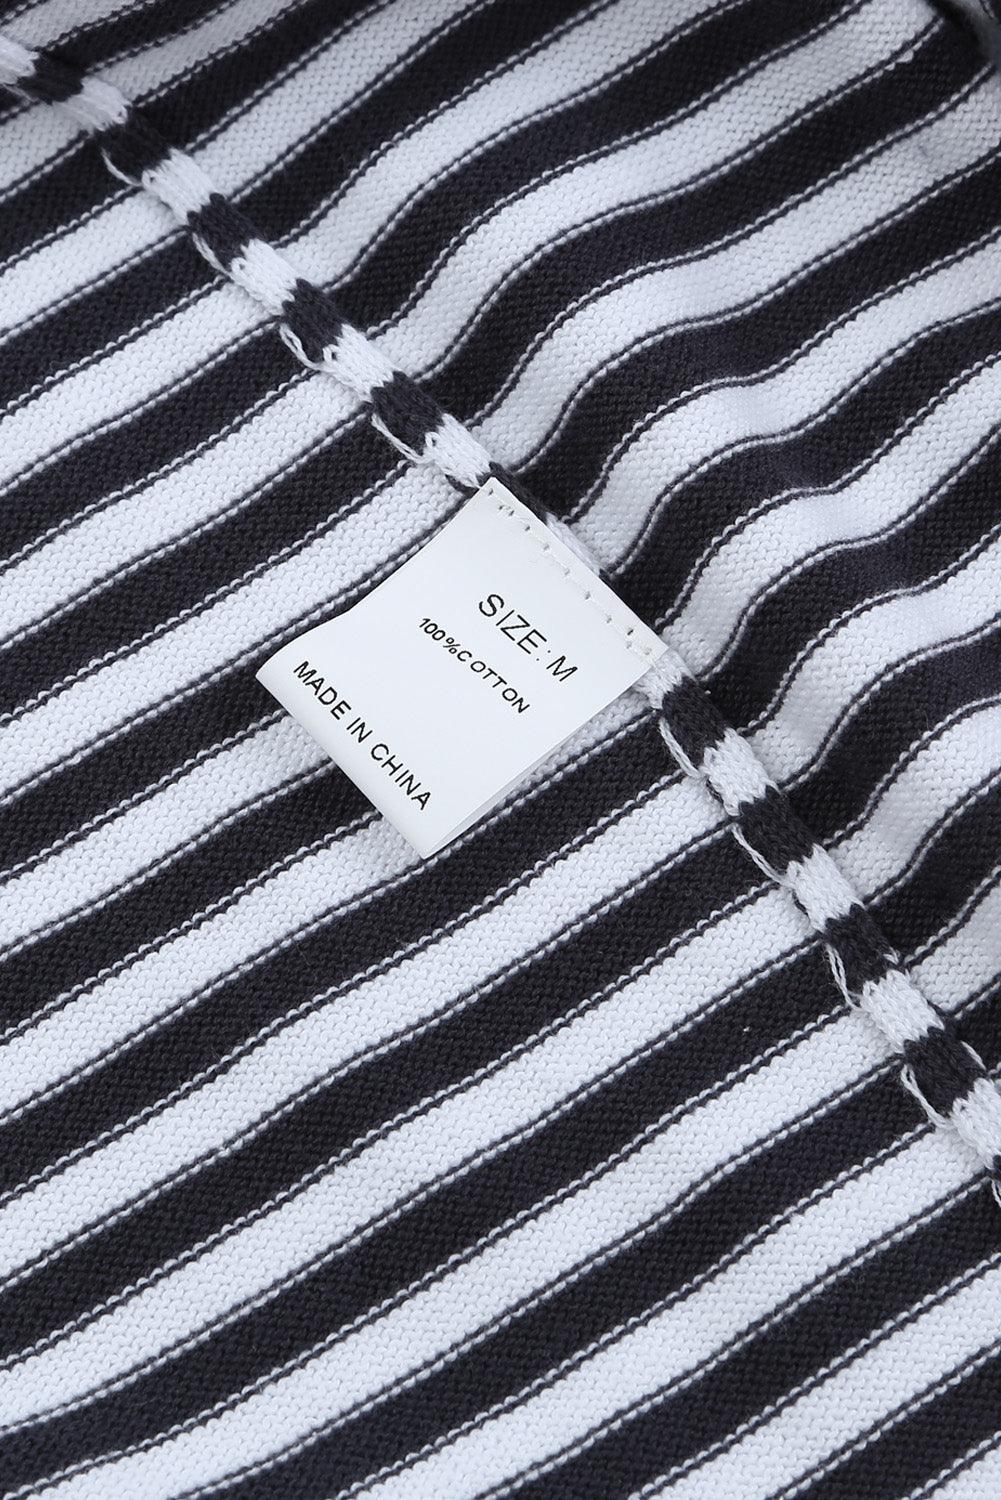 Striped Colorblock Trim Knit Pullover Sweater - Vesteeto